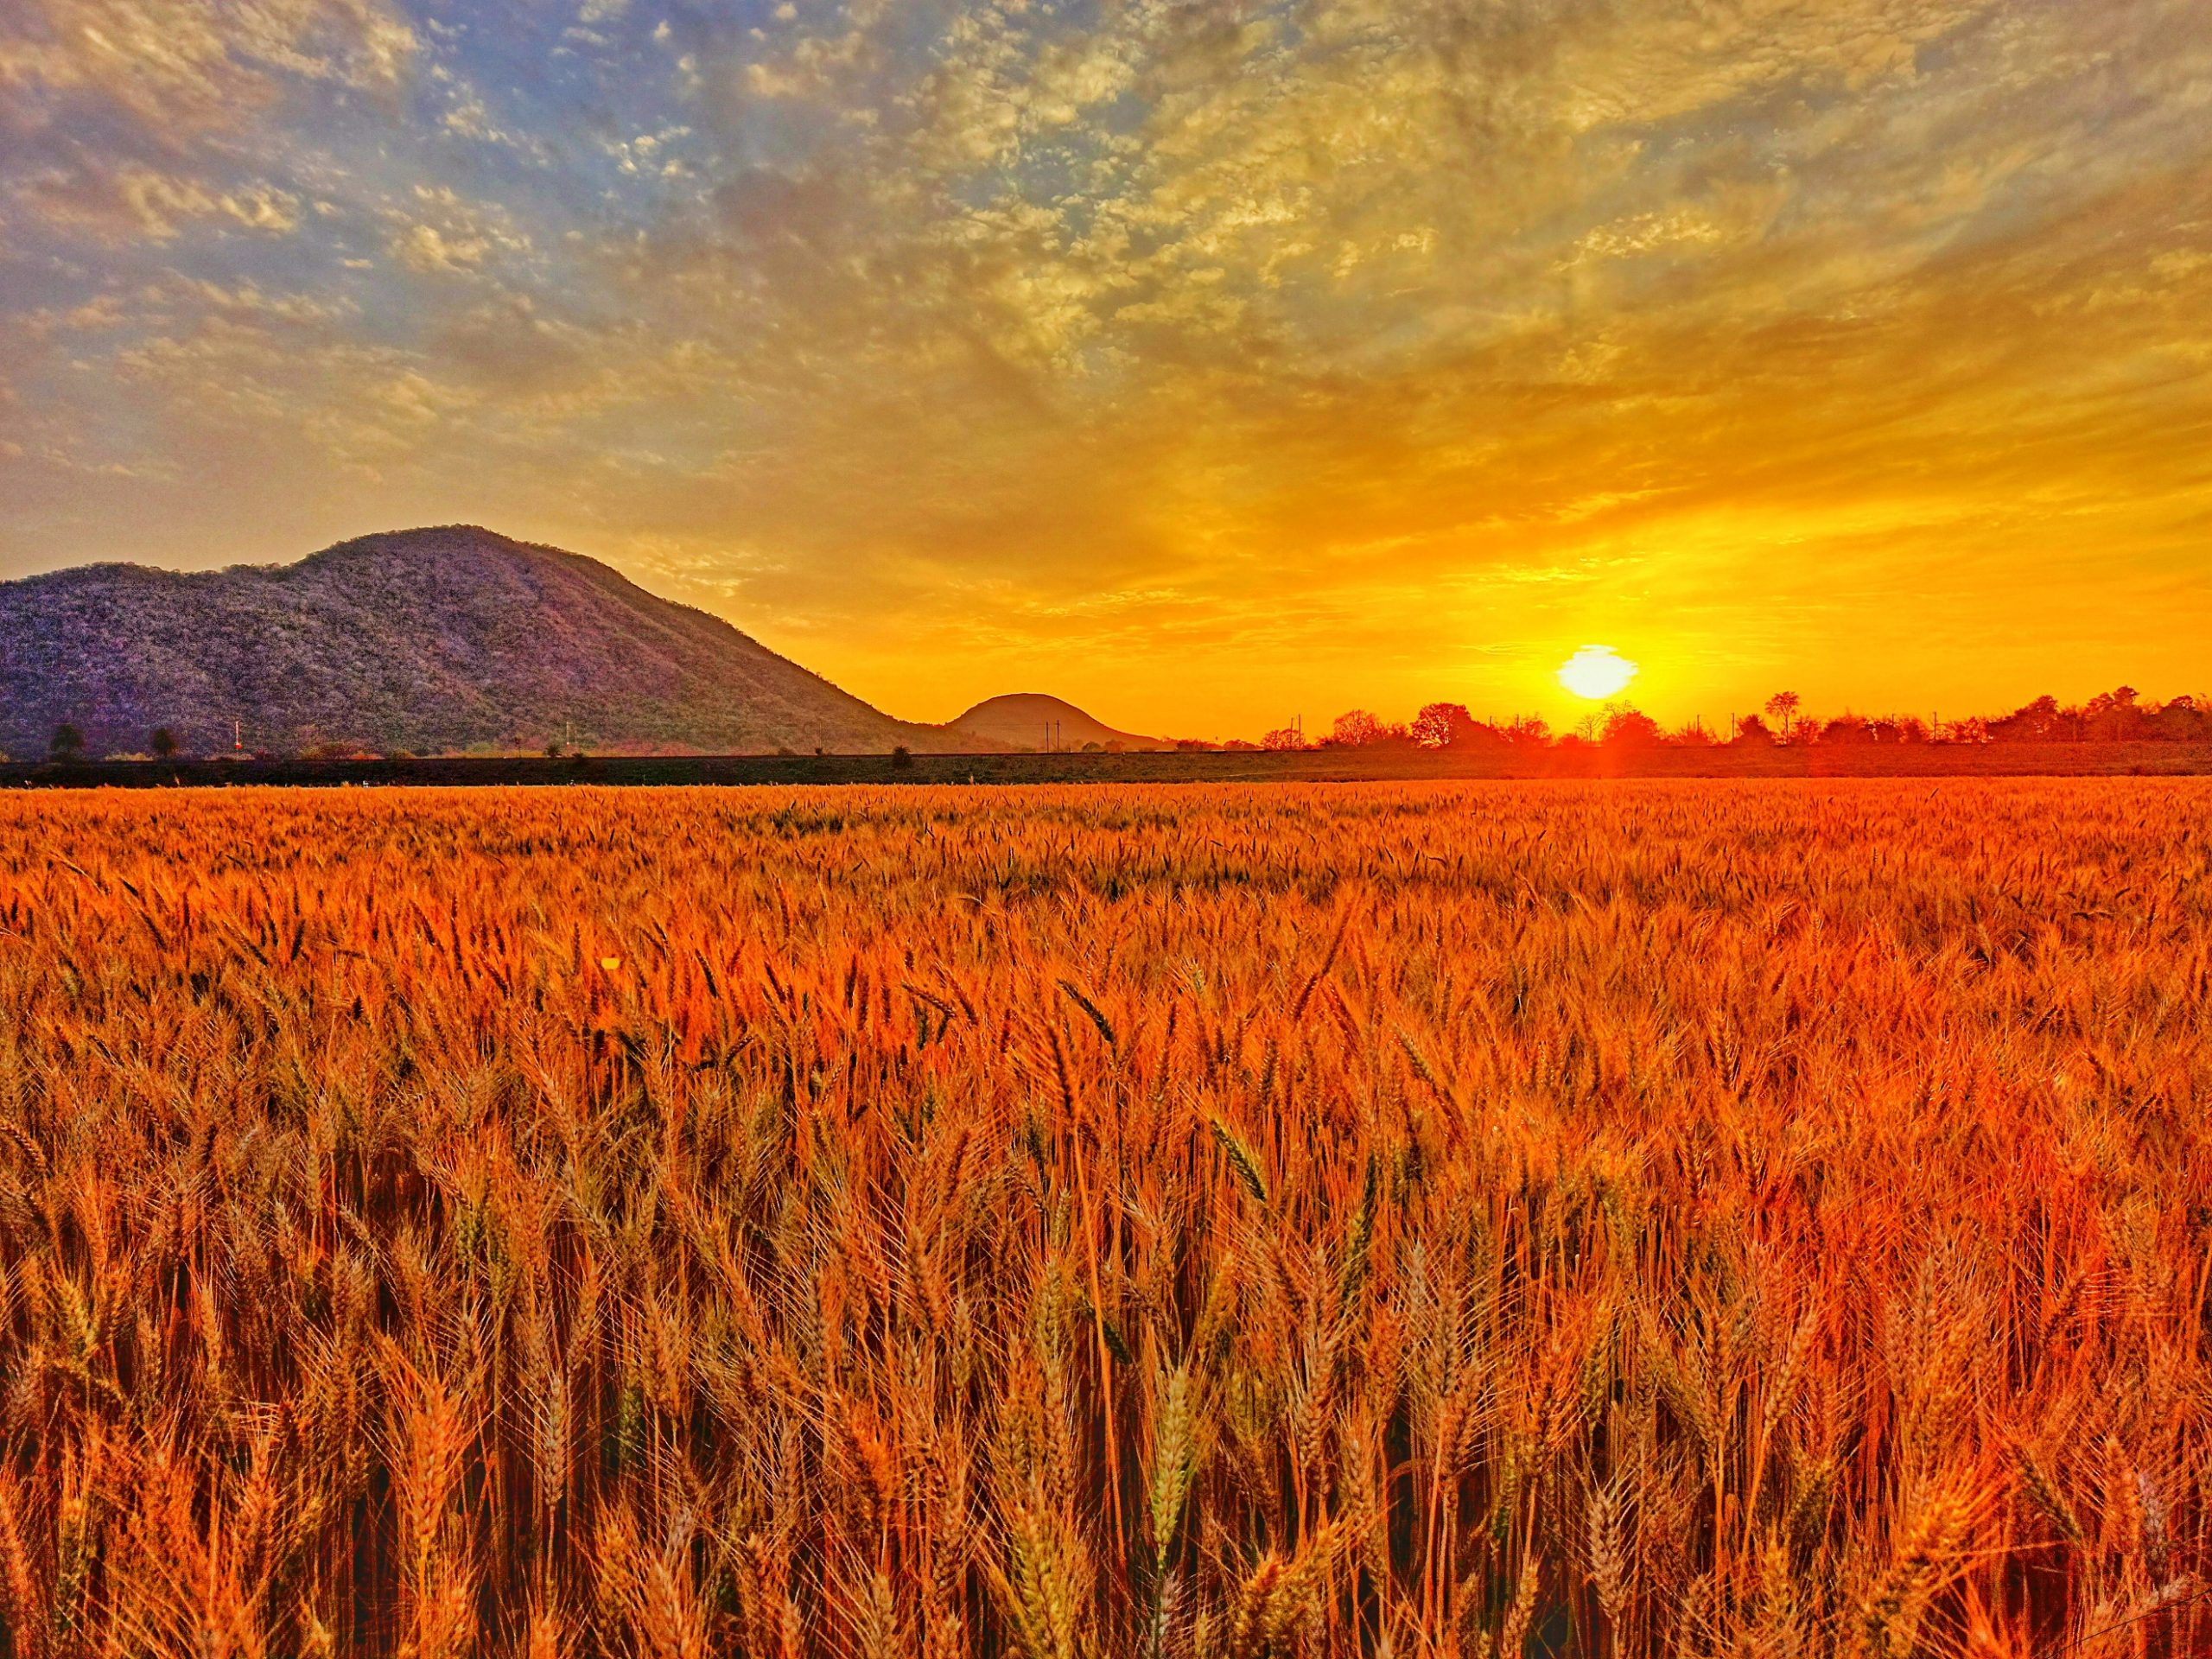 Sunset on wheat fields